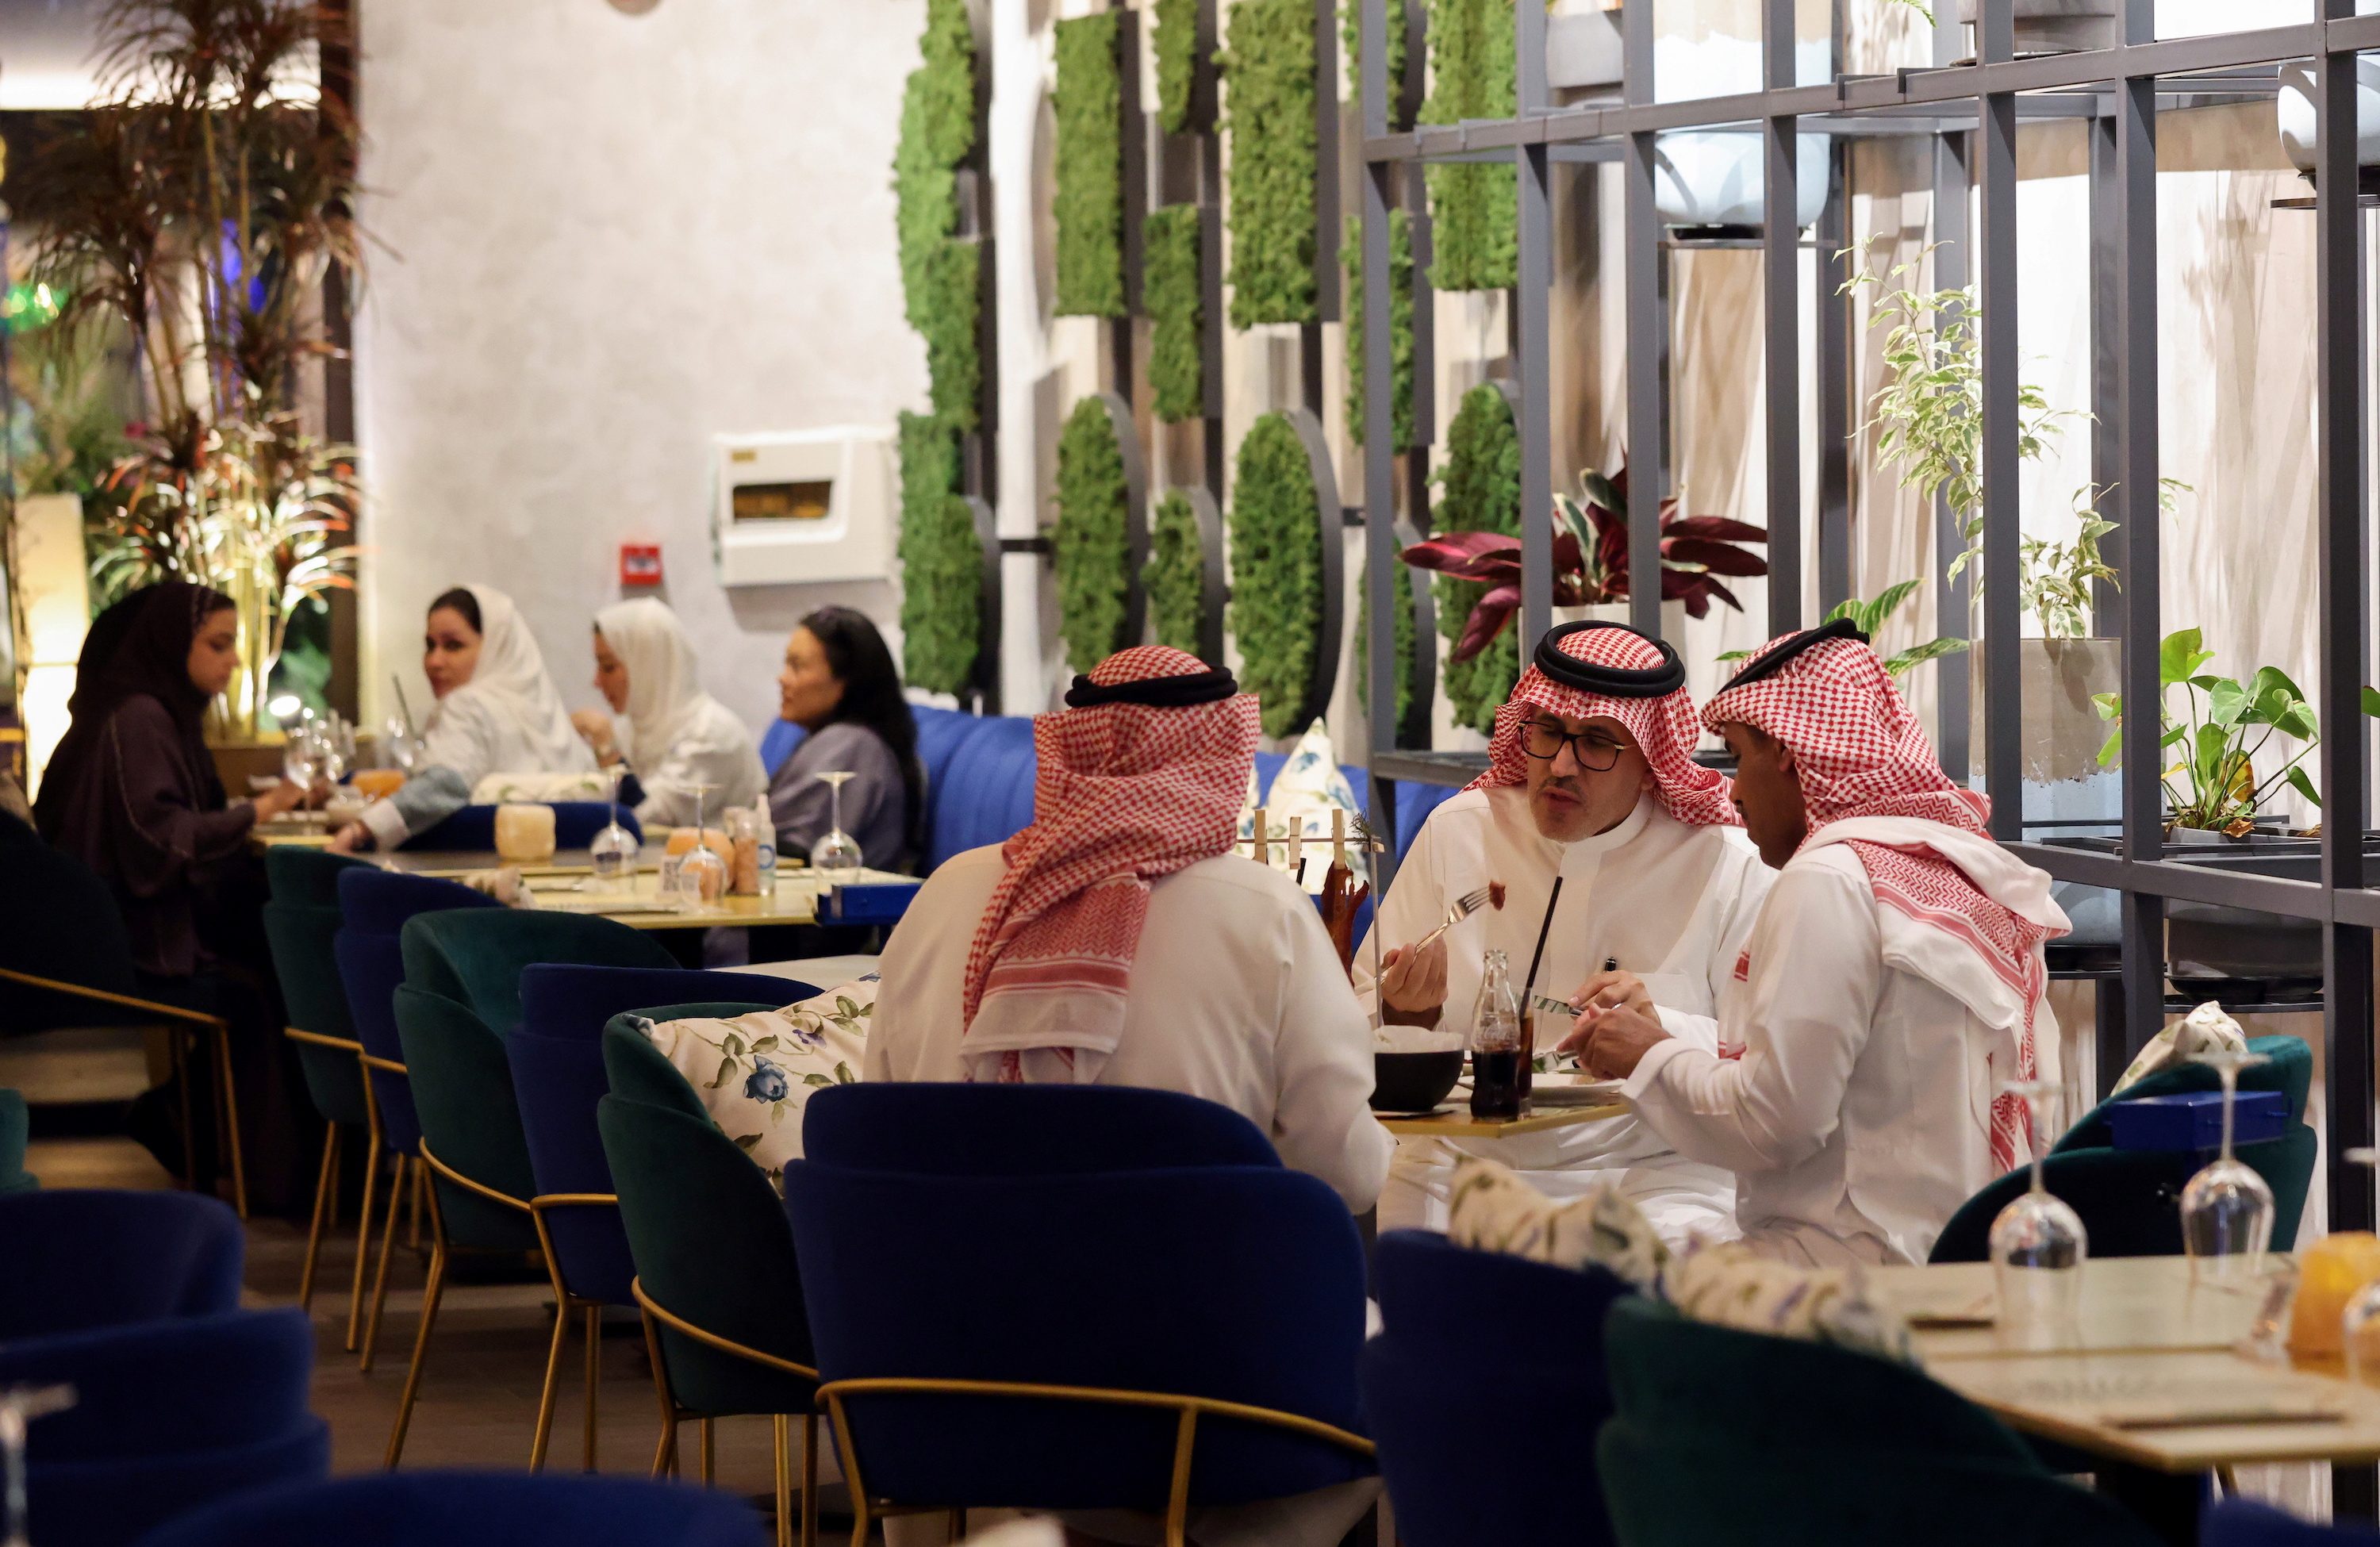 Arabian nights buzz: Staycations boost Saudi economy